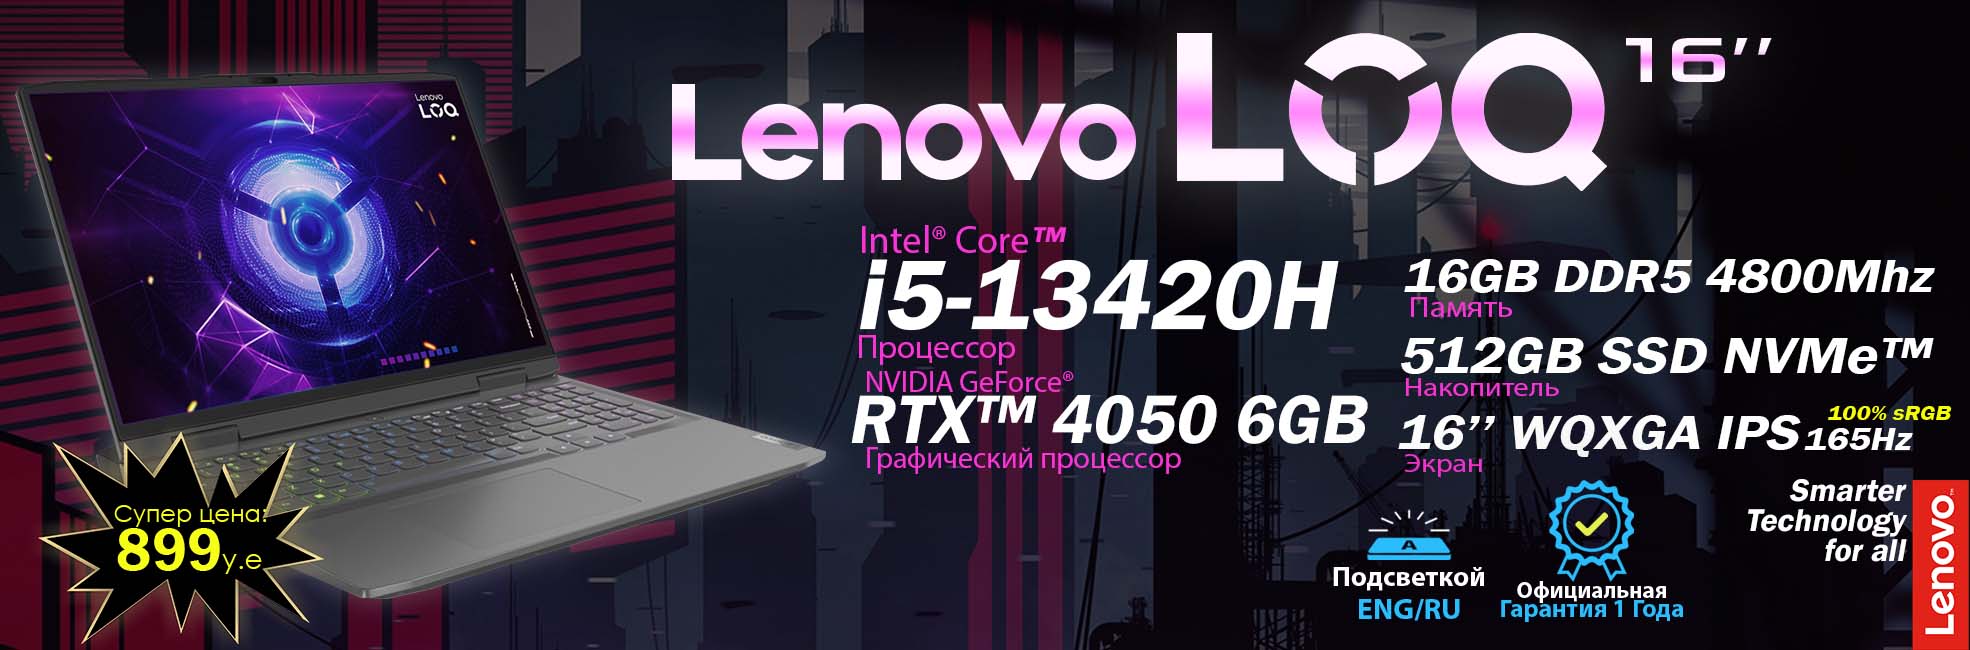 LOQ 16 i5 1970x650 1 Lenovo-ideaPad - Ноутбуки для Работы и Учёбы